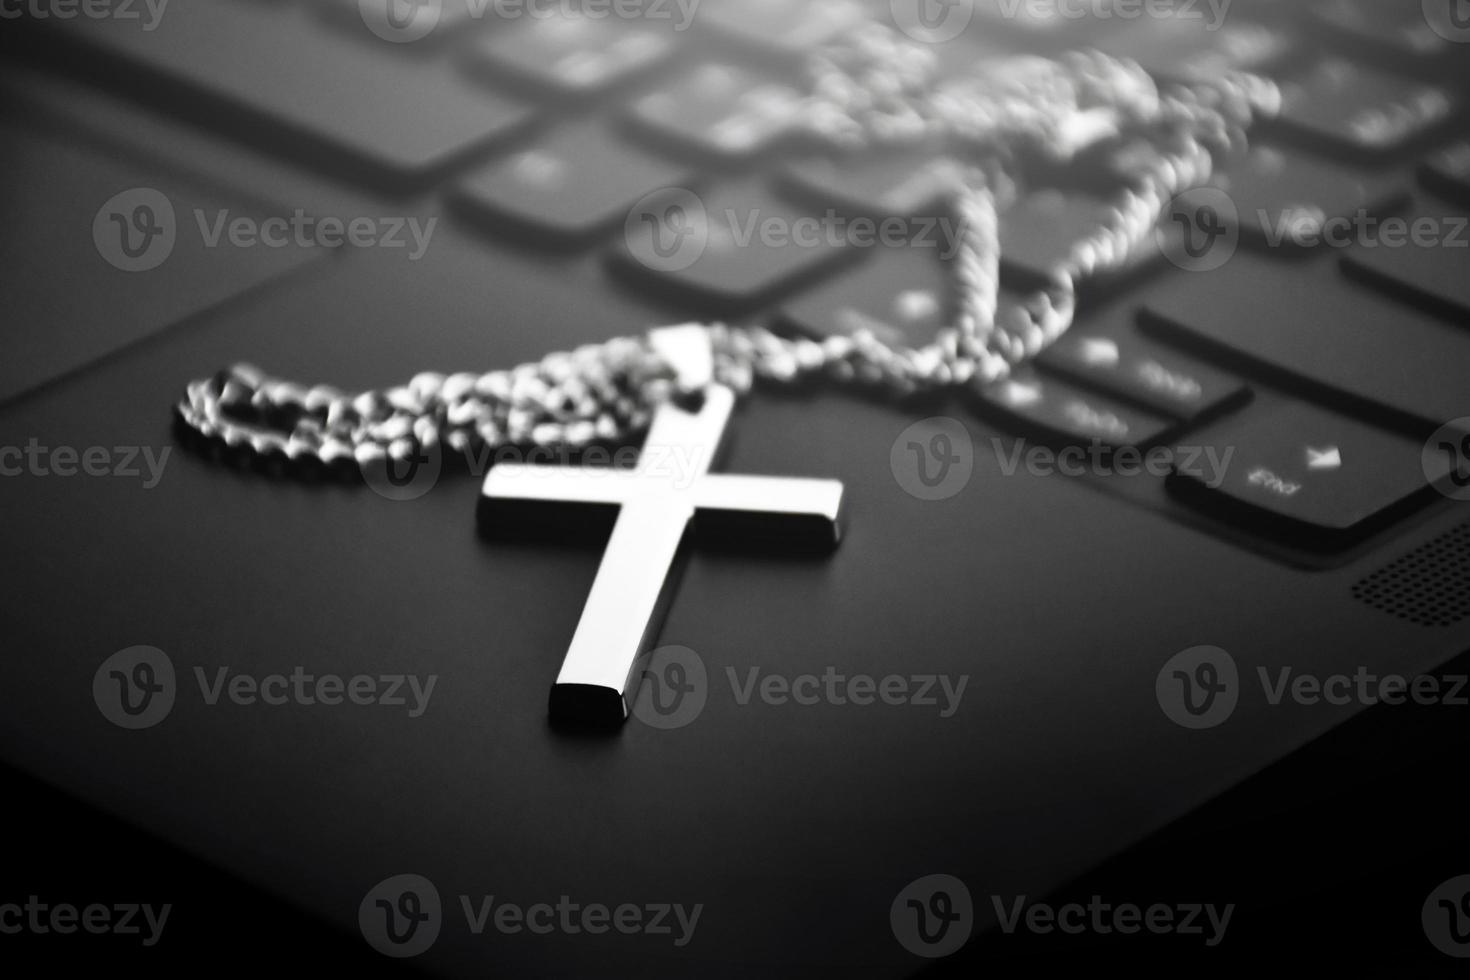 collar cruzado de metal en el teclado del portátil, enfoque suave y selectivo en el collar cruzado. foto